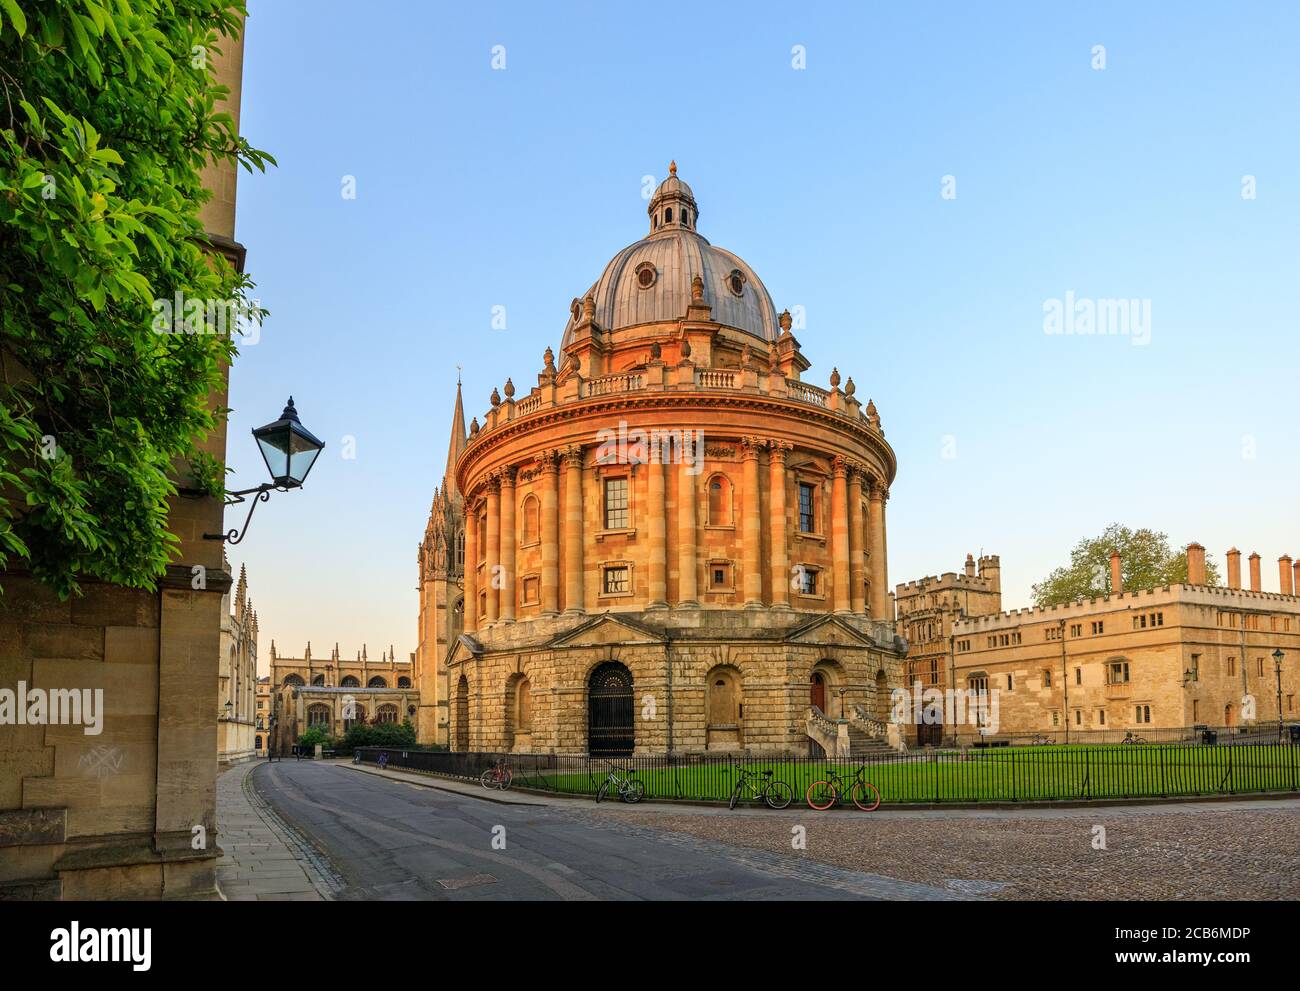 La caméra Radcliffe à Oxford au lever du soleil sans personne, tôt le matin, par temps clair et ciel bleu. Oxford, Angleterre, Royaume-Uni. Banque D'Images